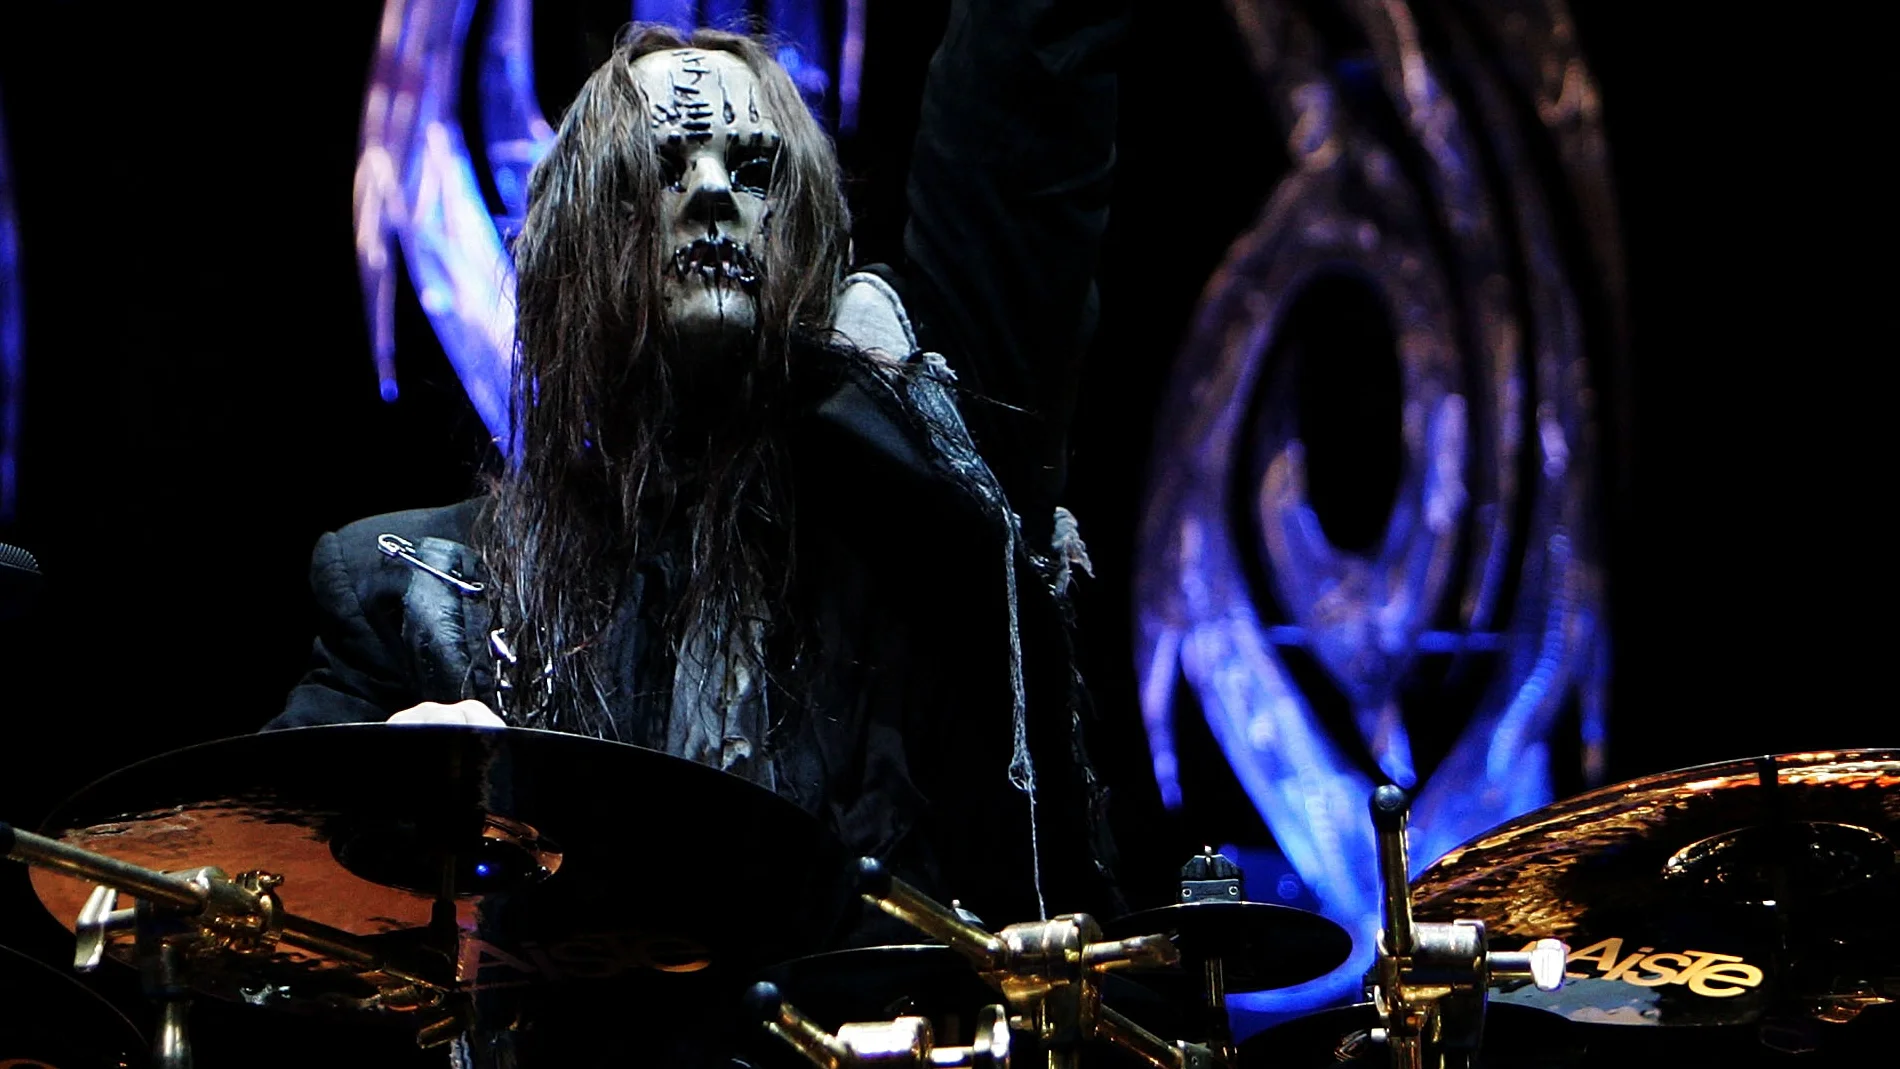 Muere Joey Jordison, fundador y exbatería de Slipknot, a los 46 años